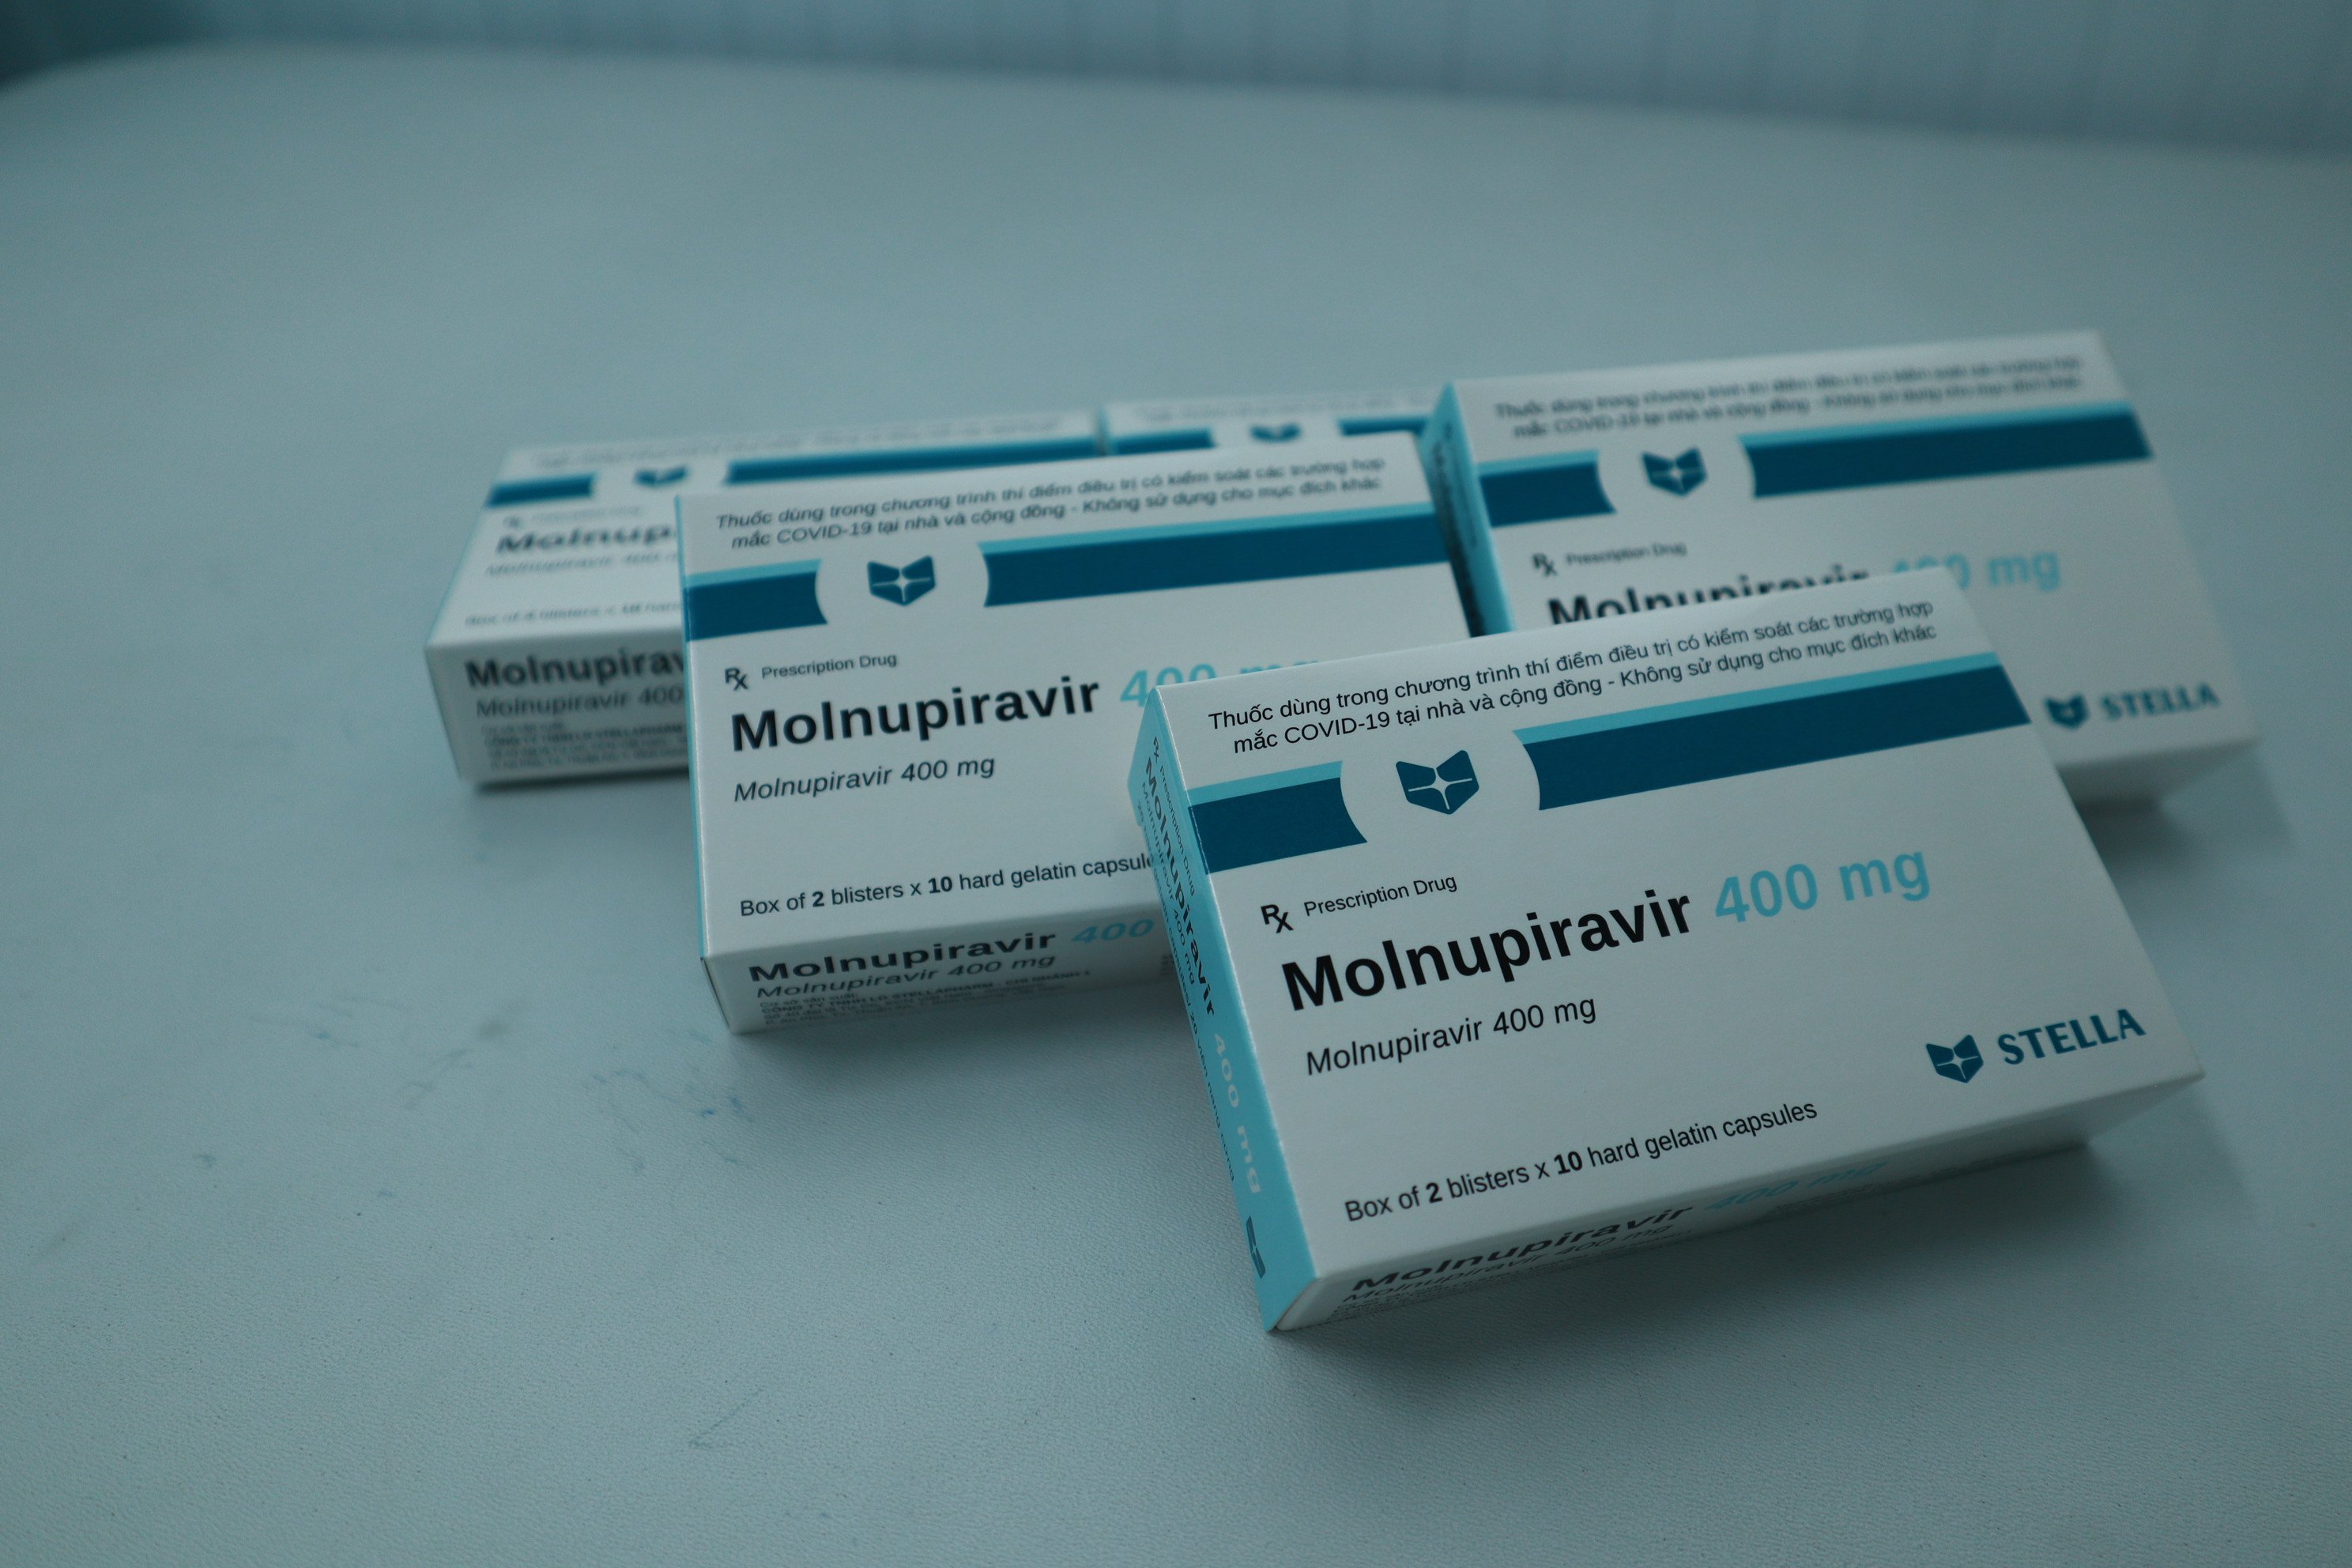 Sắp cấp phép lưu hành 3 thuốc chứa hoạt chất Molnupiravir